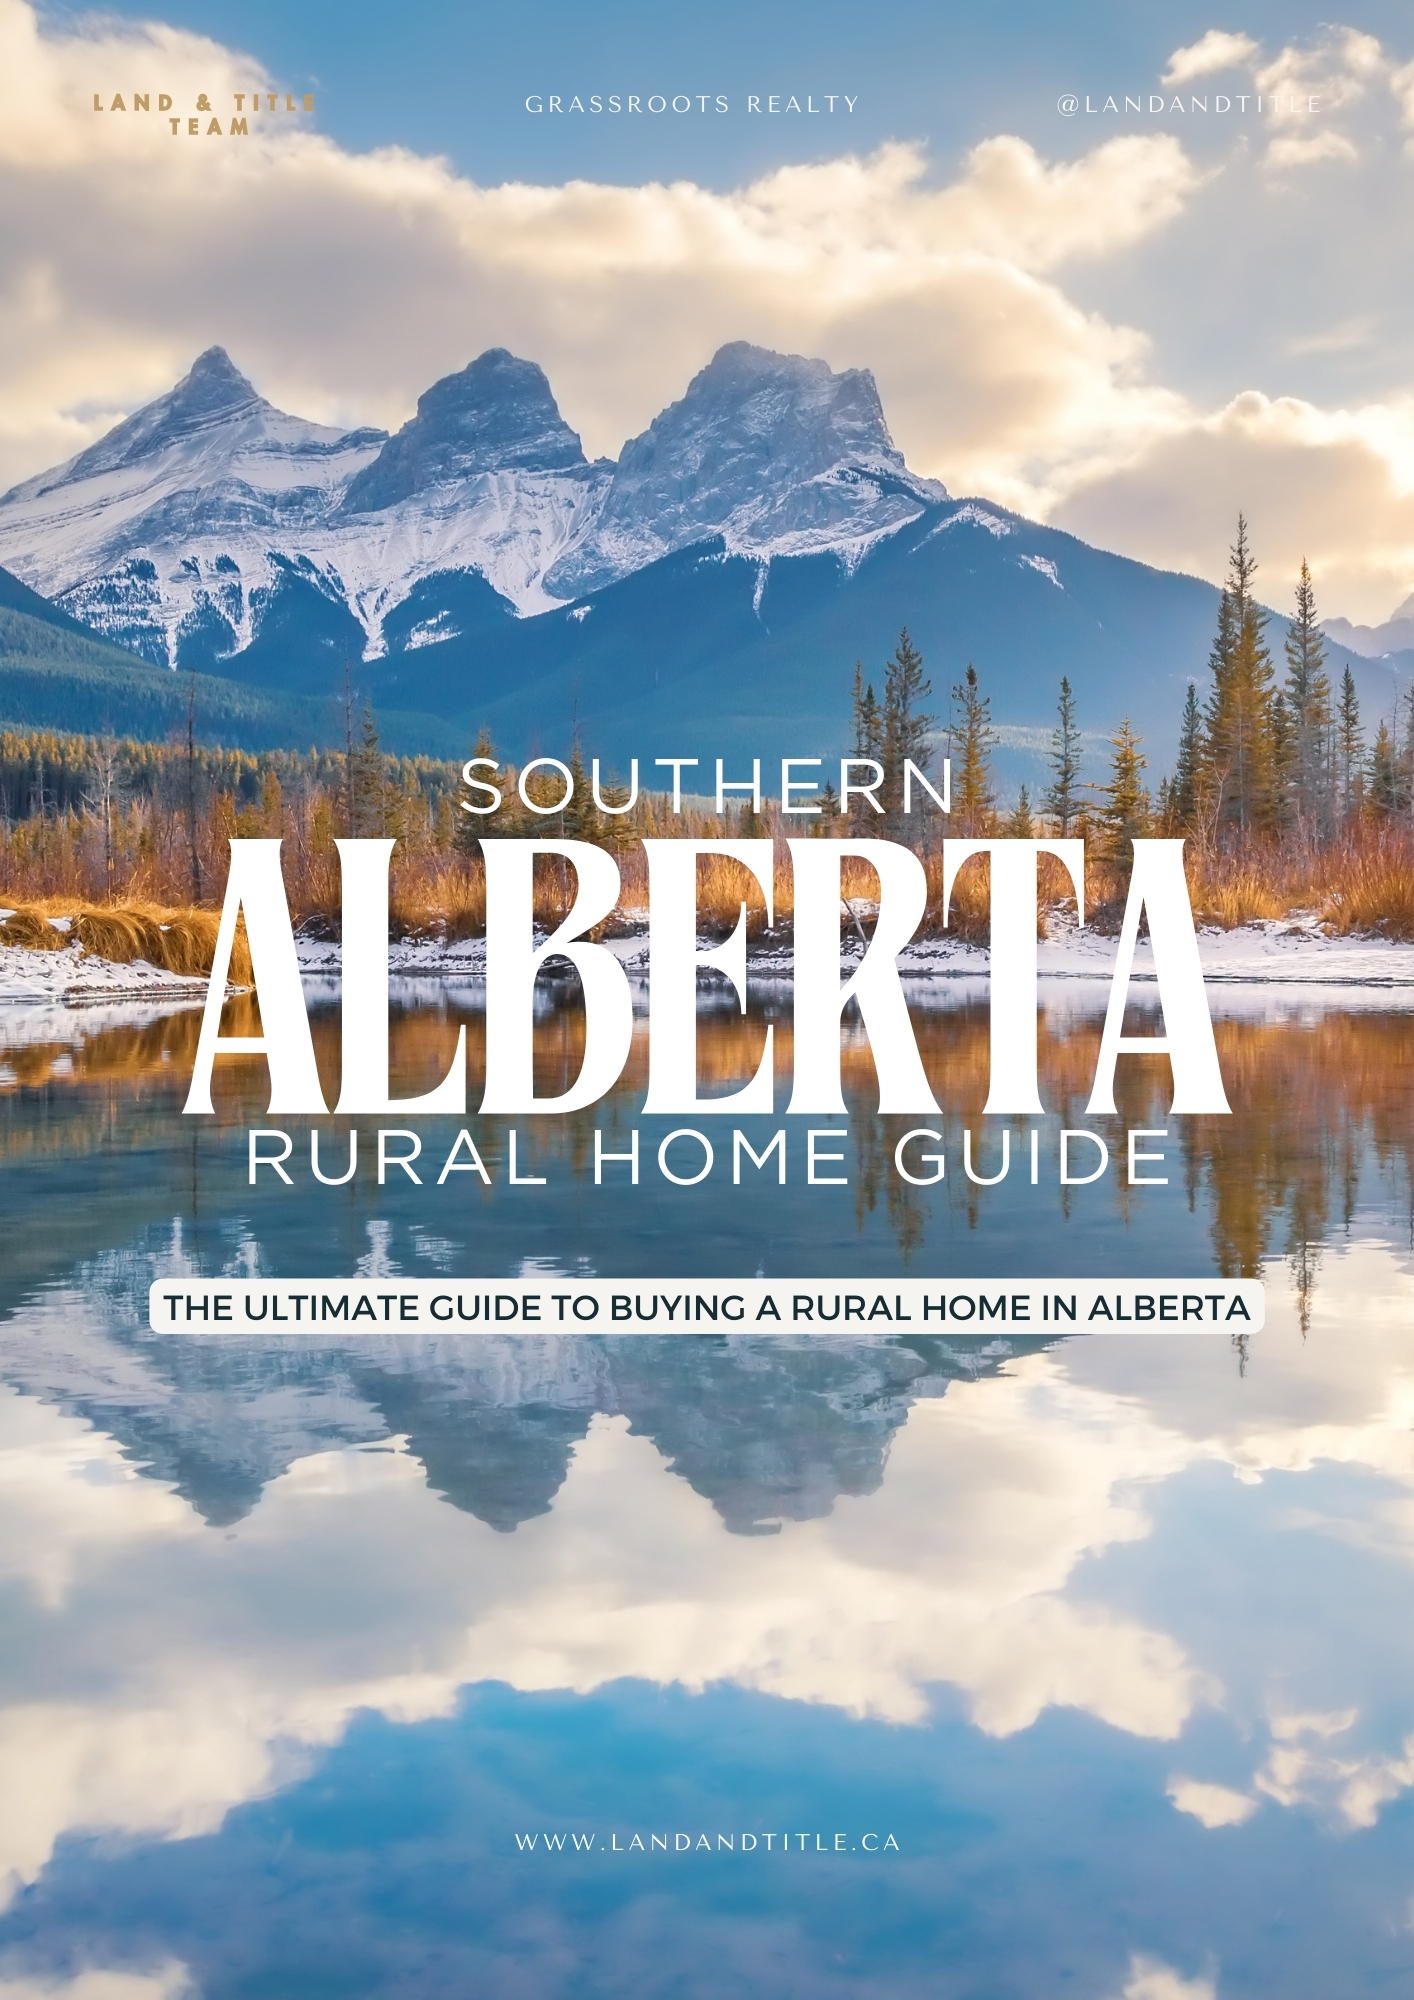 Rural Real Estate Buying Guide in Alberta